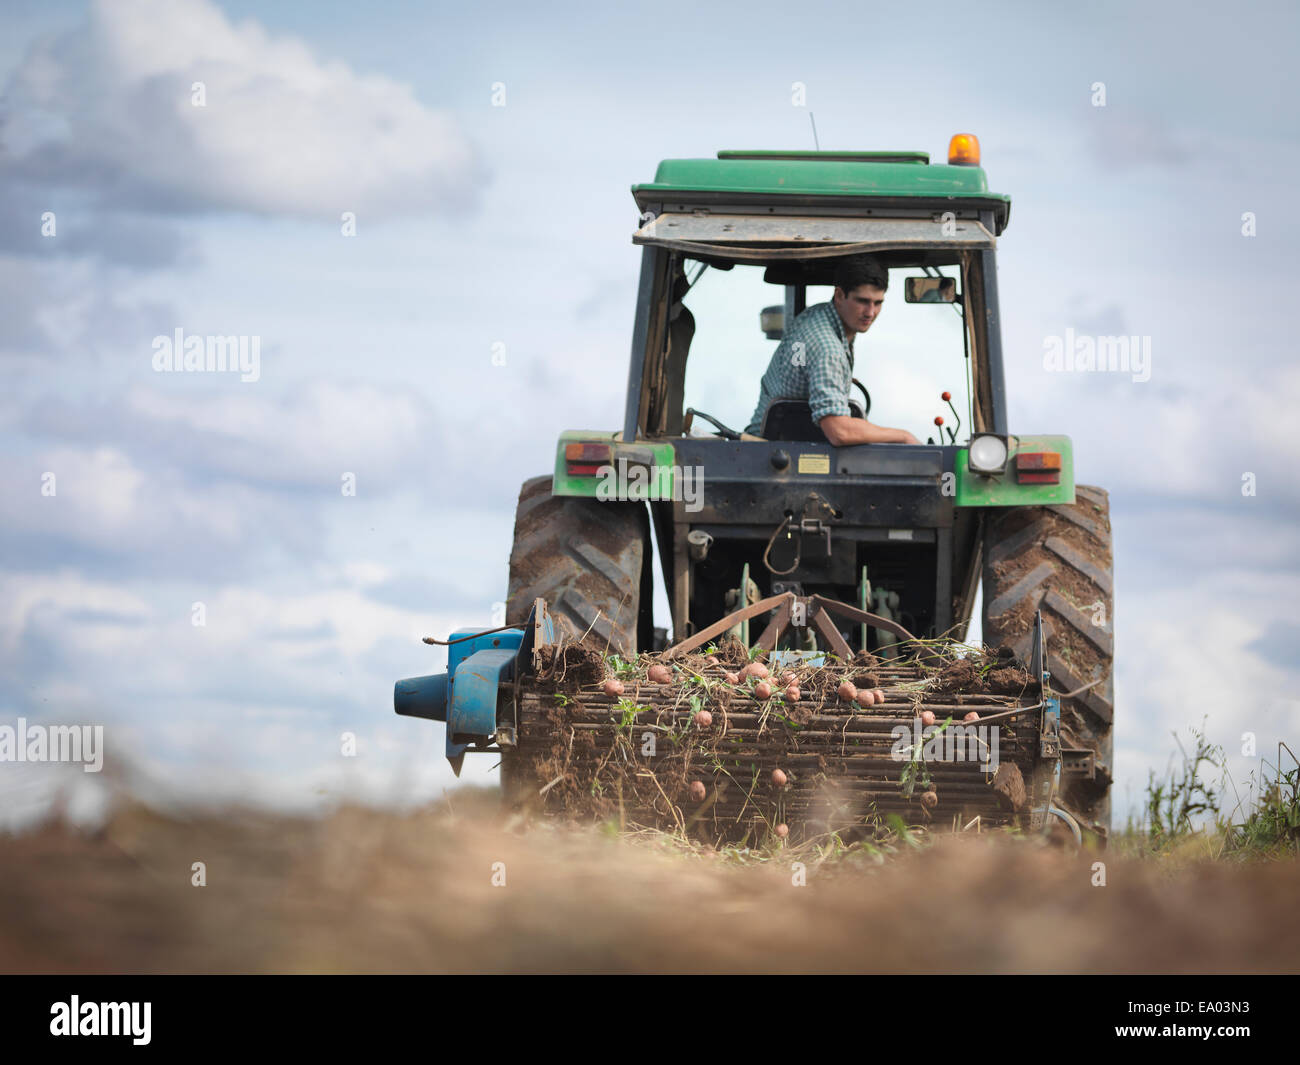 Agriculteur sur le tracteur à la récolte des pommes de terre biologiques Banque D'Images